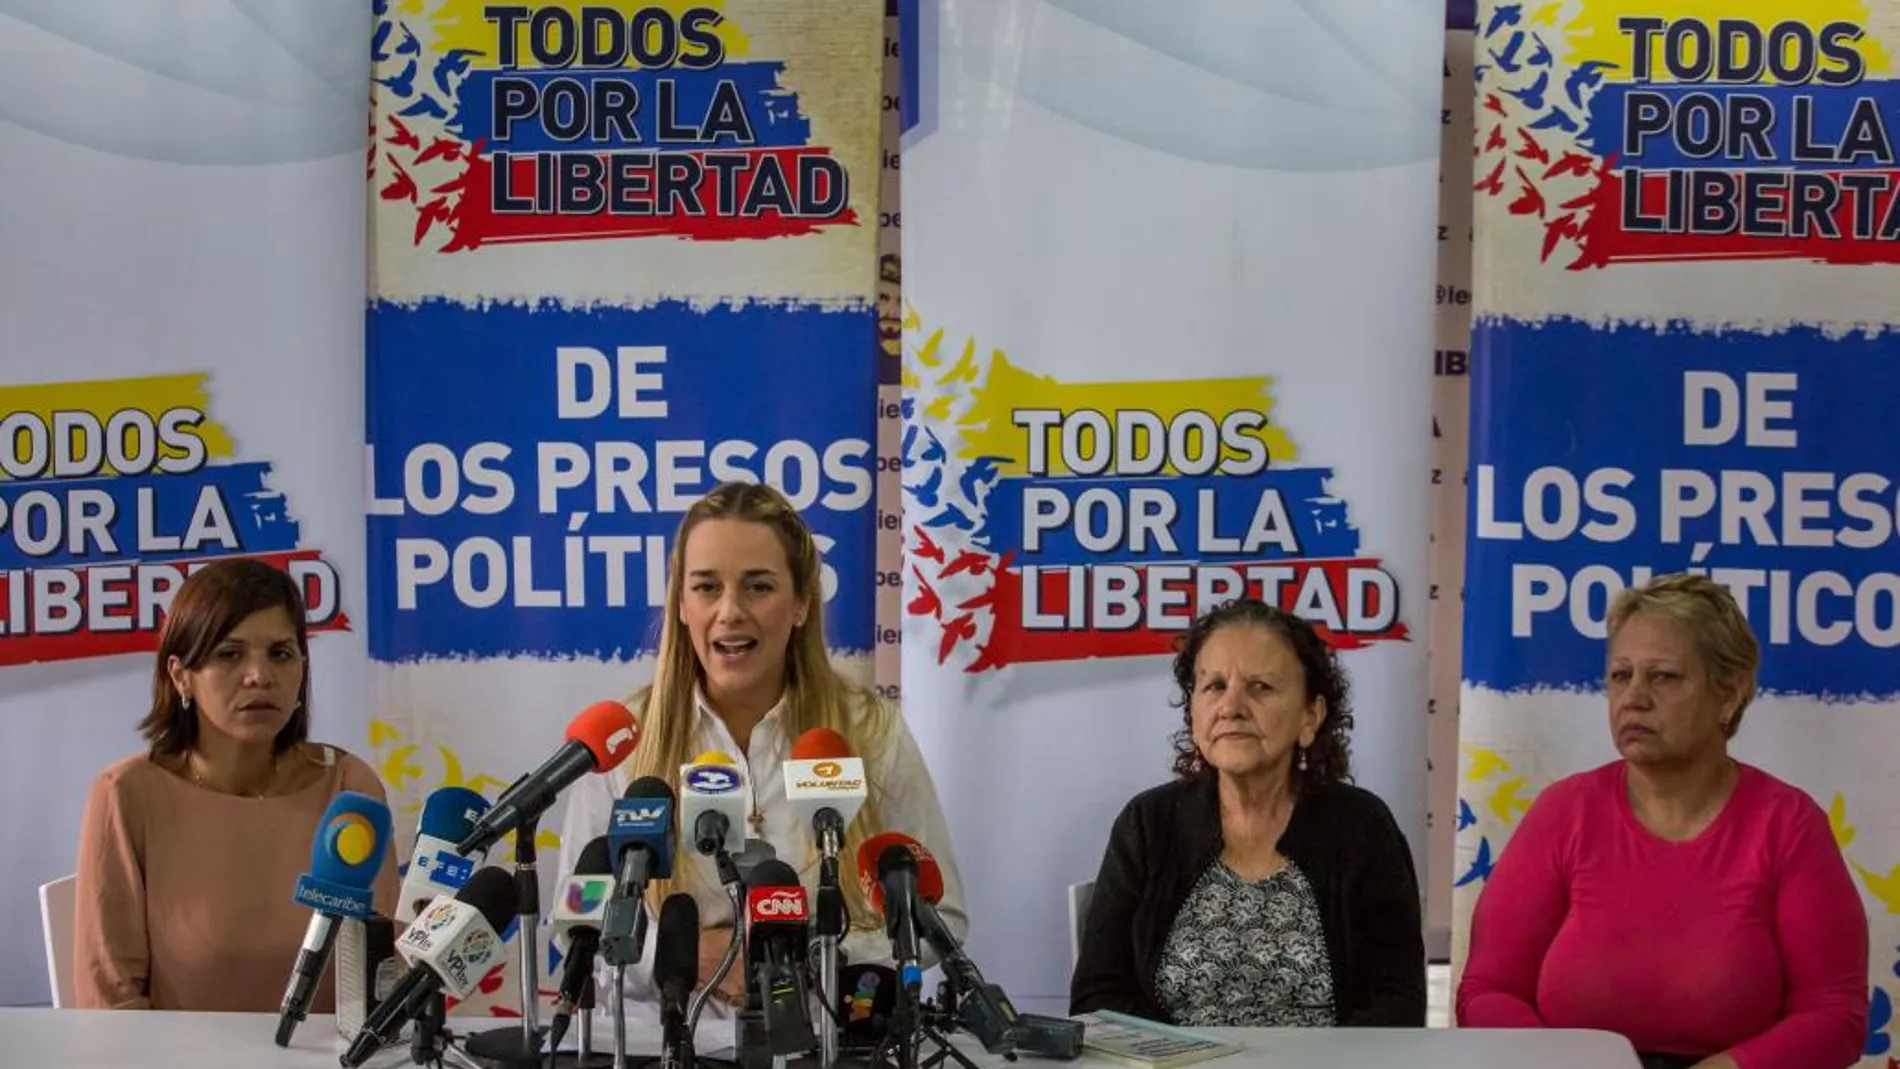 Lilian Tintori, esposa del opositor preso venezolano Leopoldo López, ofrece declaraciones el jueves pasado en Caracas